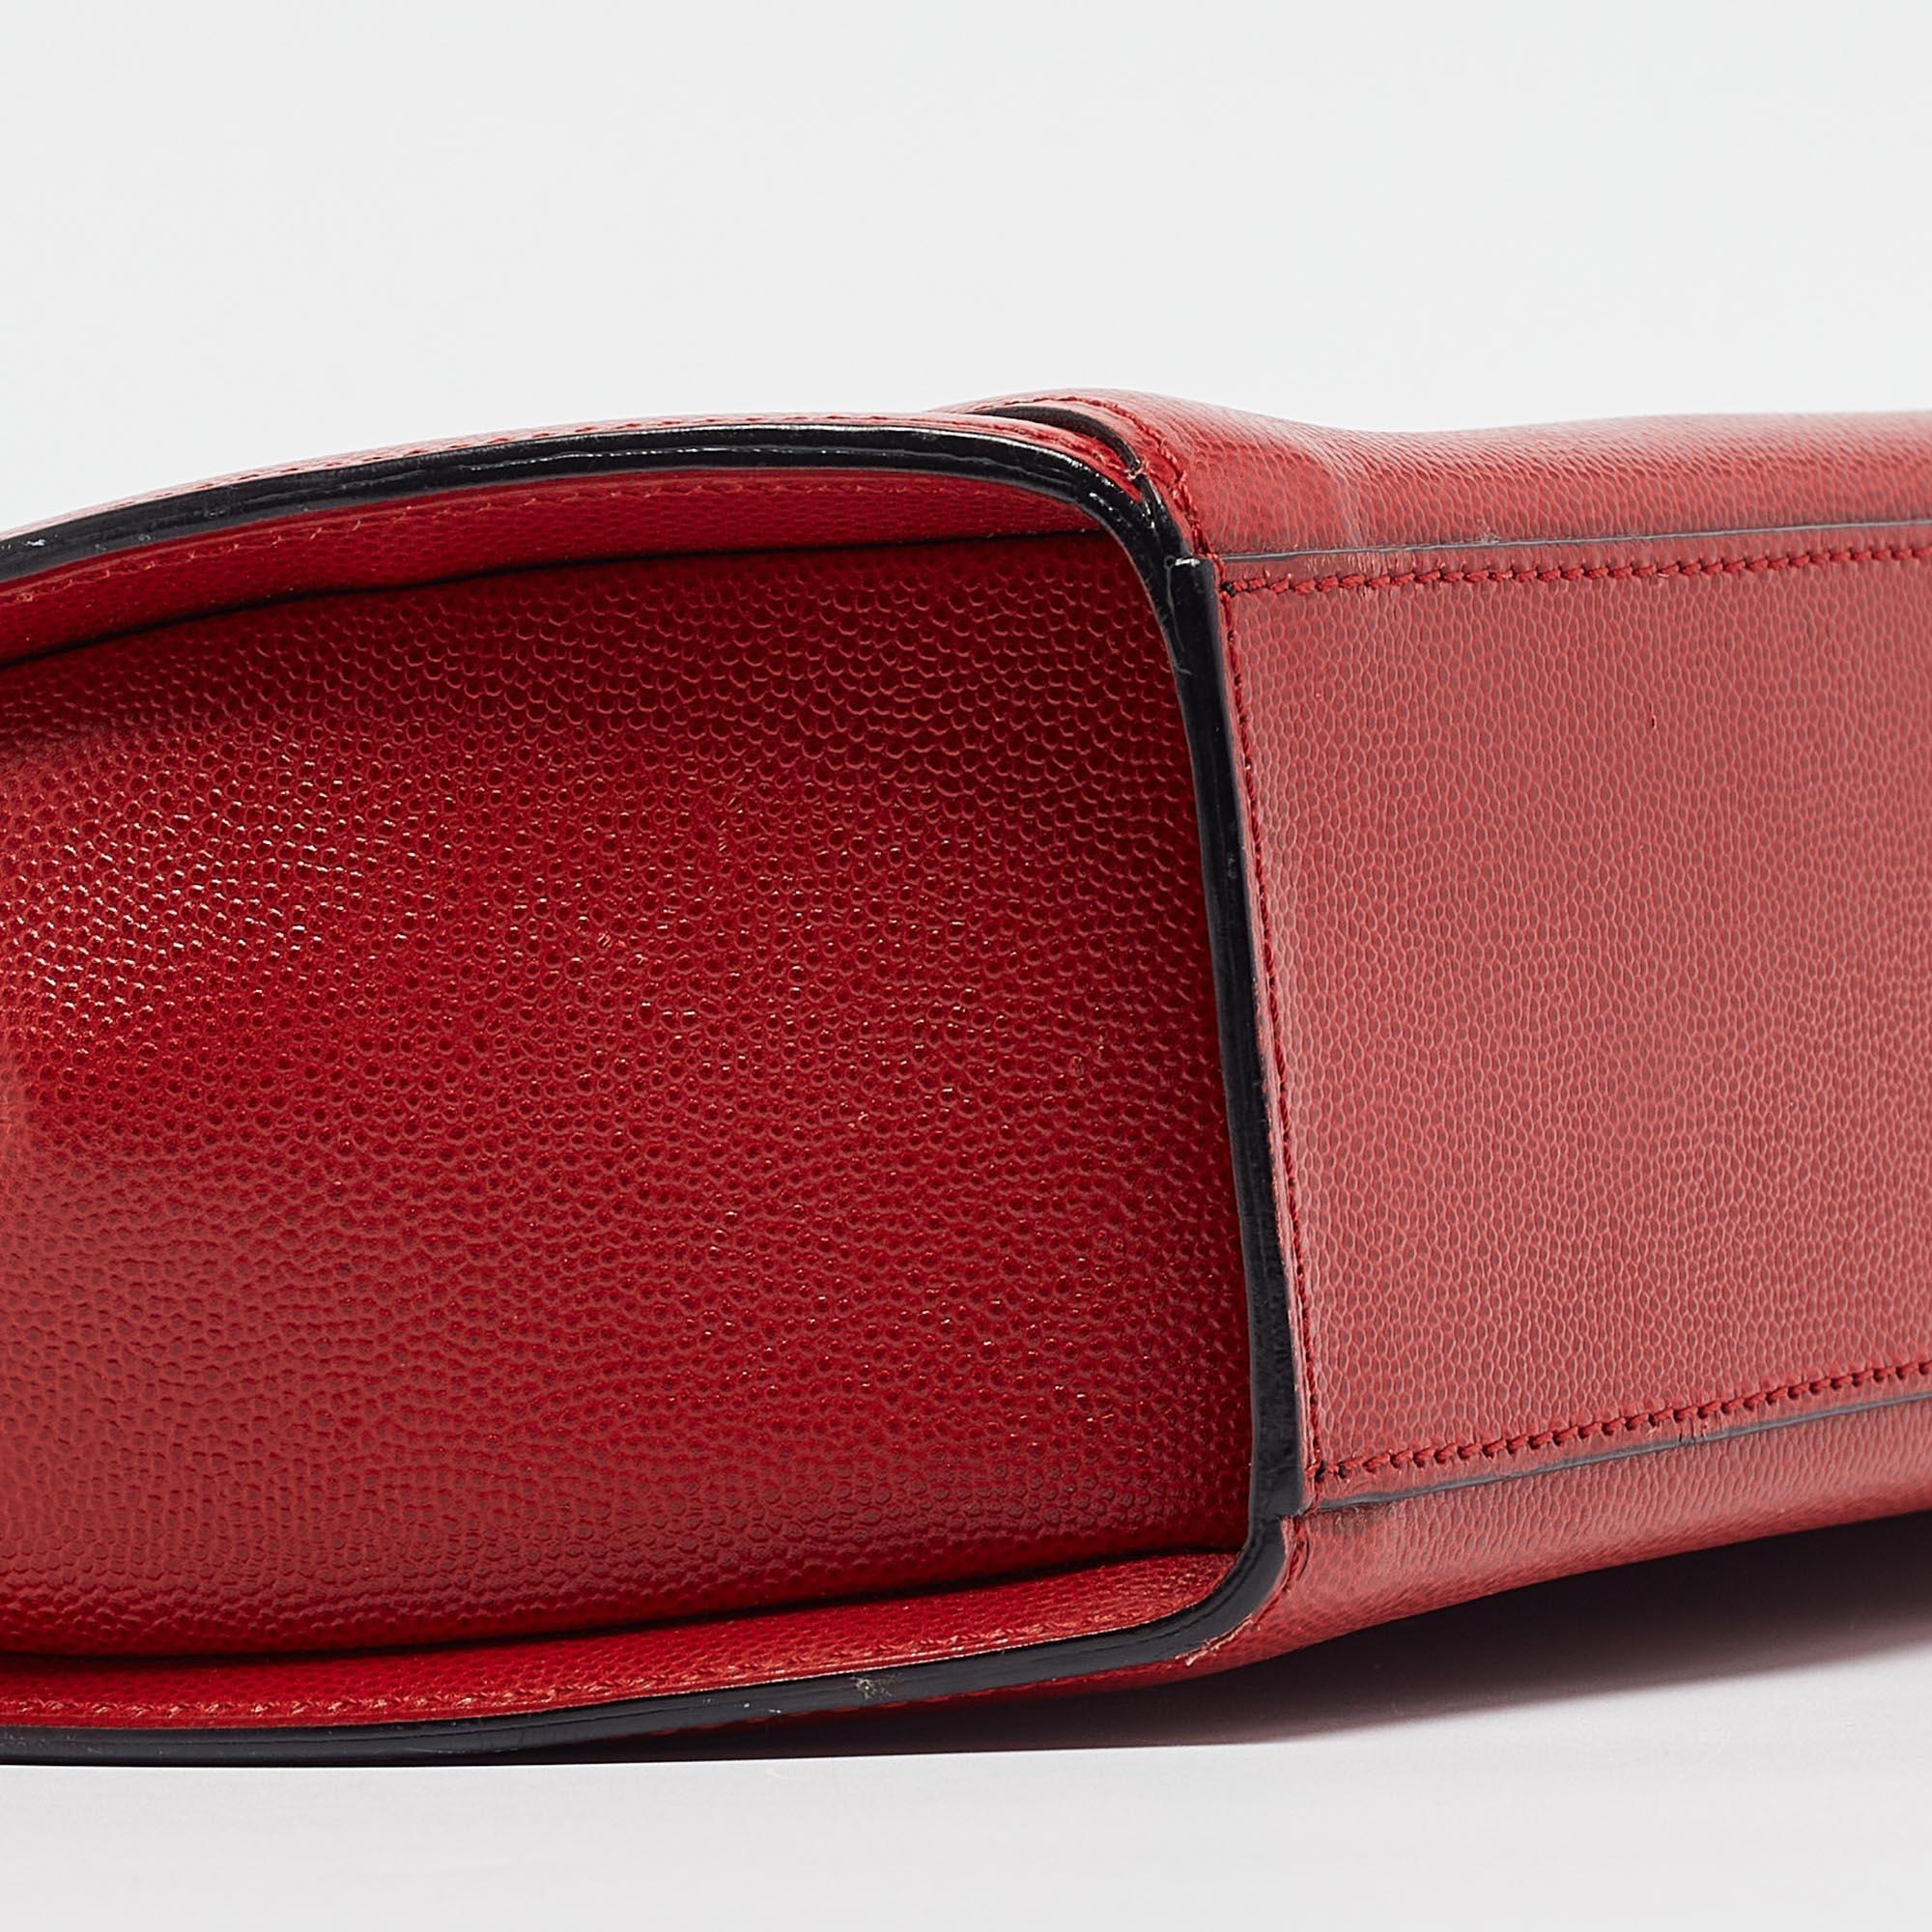 Mit dieser roten Tasche von Cartier können Sie alles, was Sie brauchen, stilvoll transportieren. Gefertigt aus den besten MATERIALEN, ist dies ein Accessoire, das dauerhaften Stil und Gebrauch verspricht.

